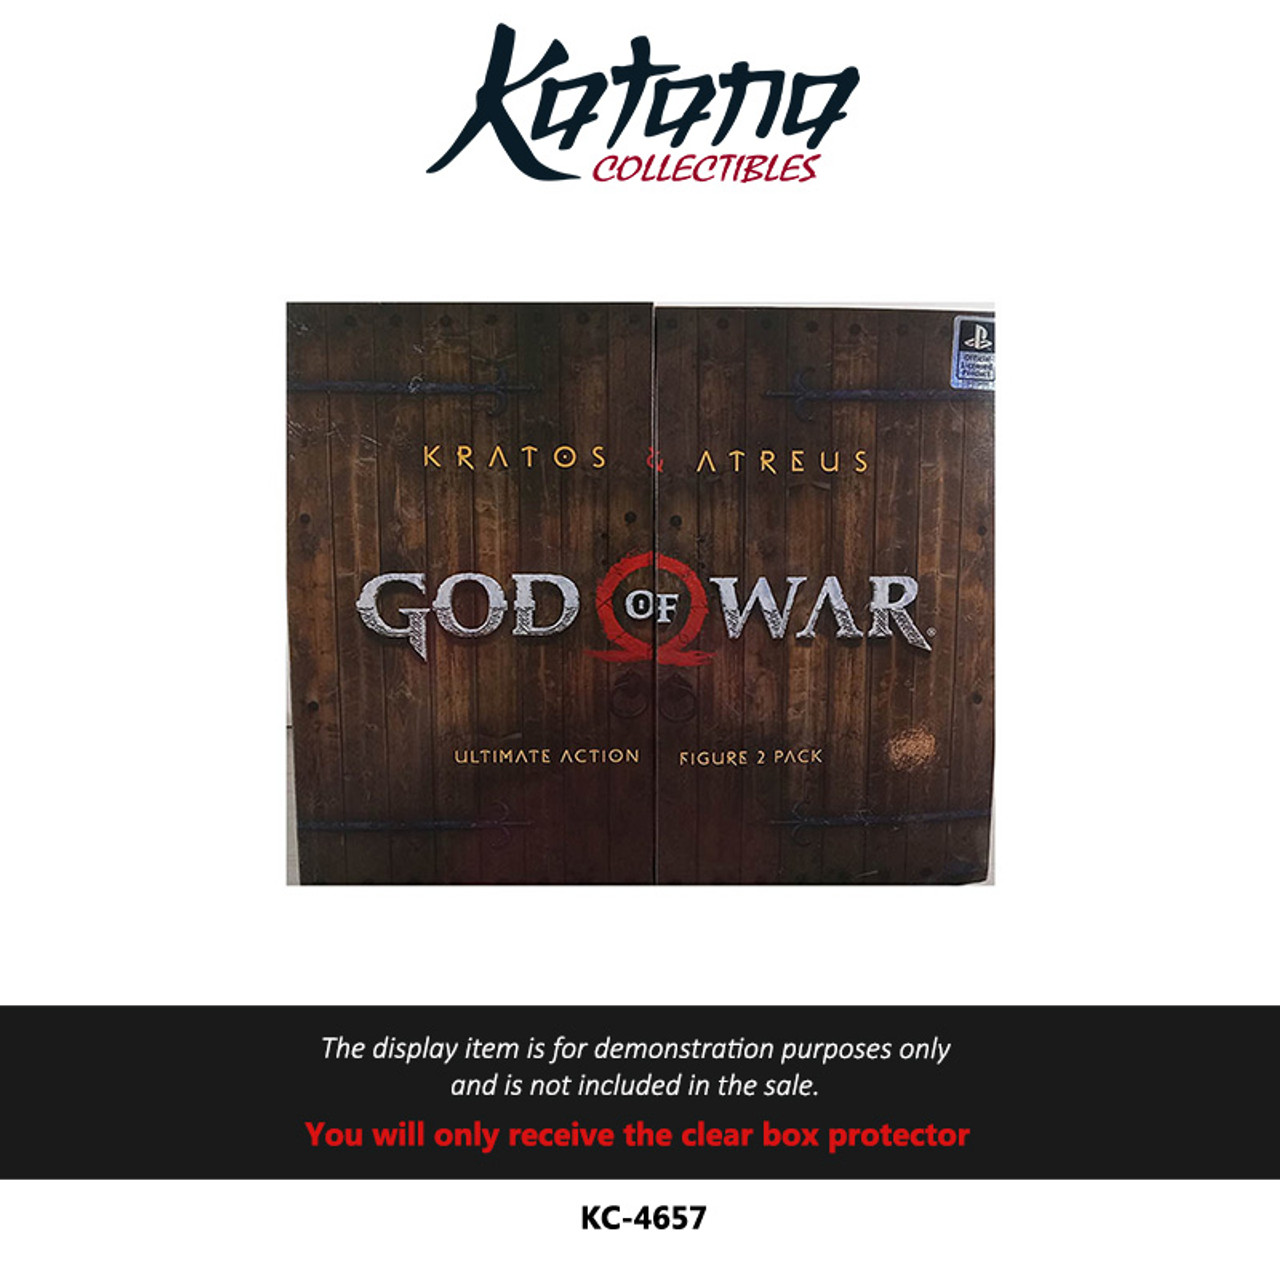 Katana Collectibles Protector For God of War Kratos & Atreus Ultimate Action Figure 2 pack- NECA